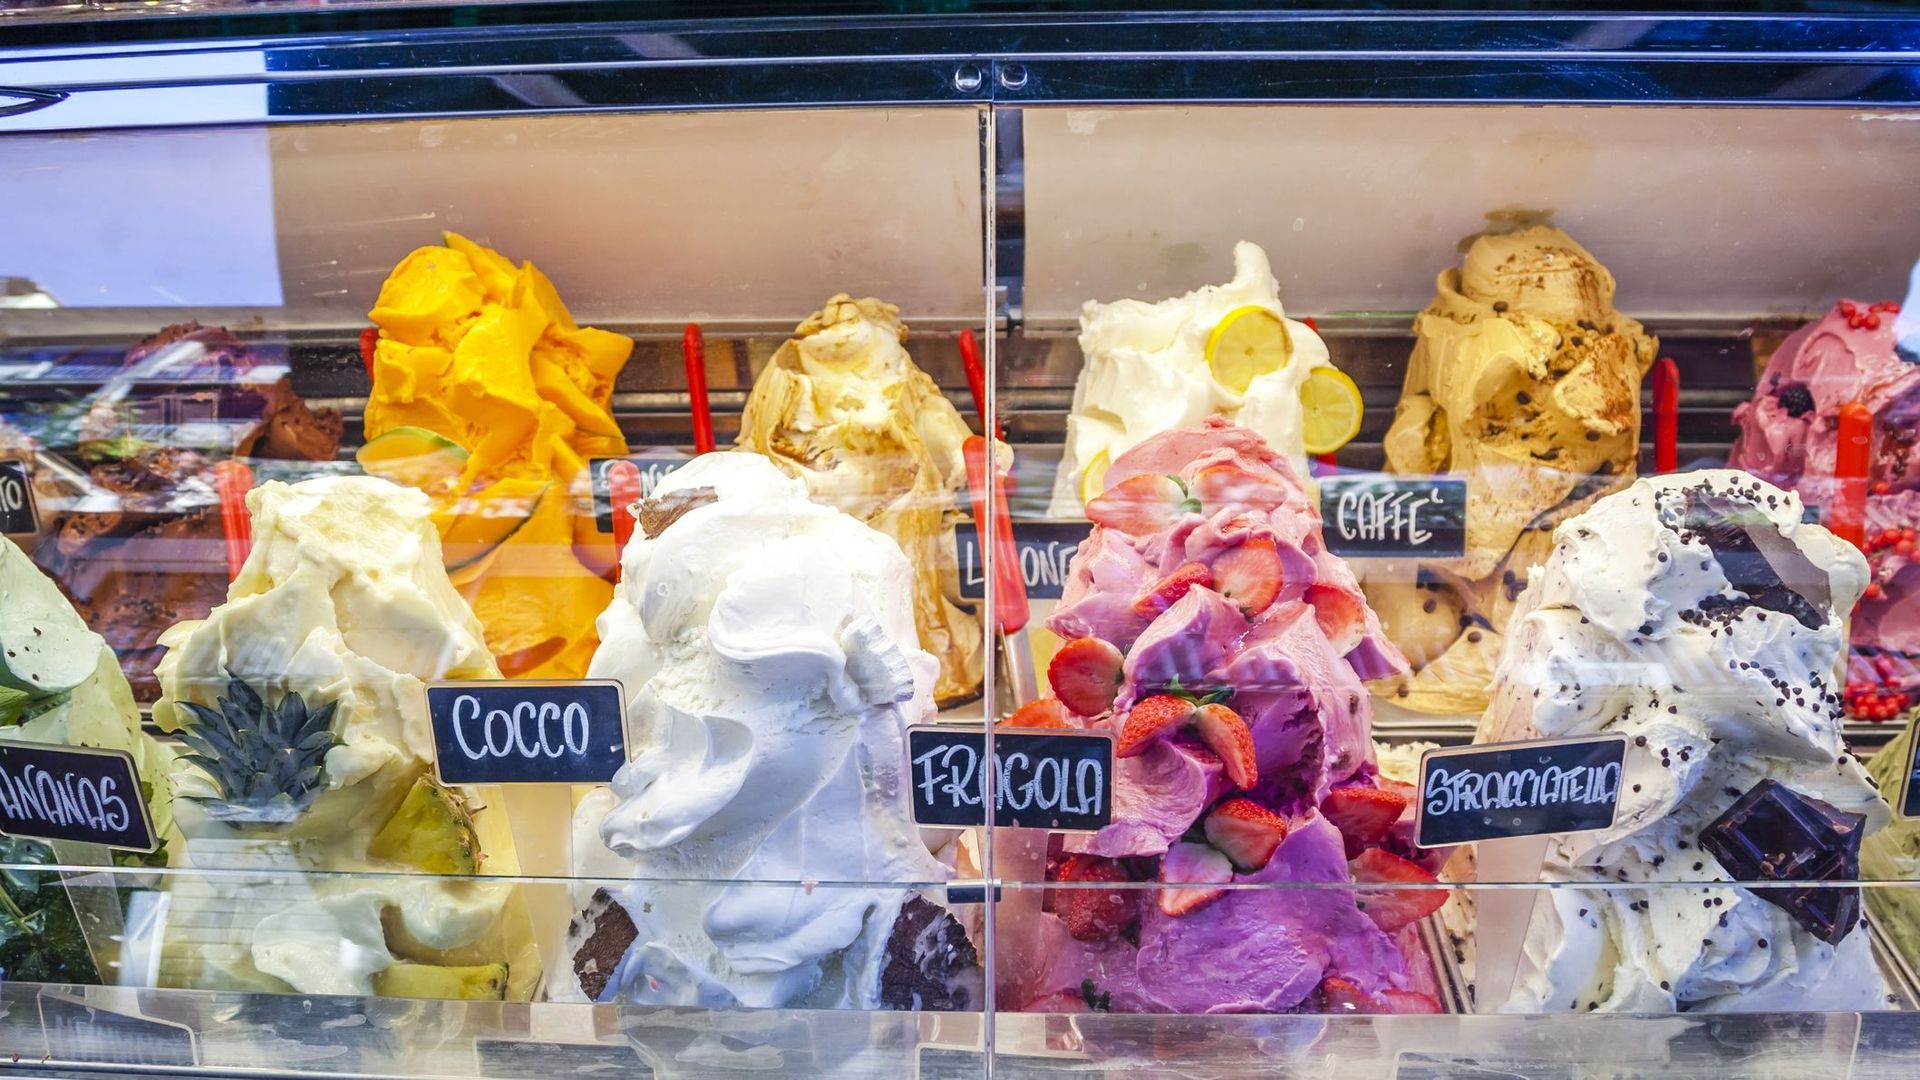 En Italie, fabriquer de "mauvaises glaces" peut coûter très cher.